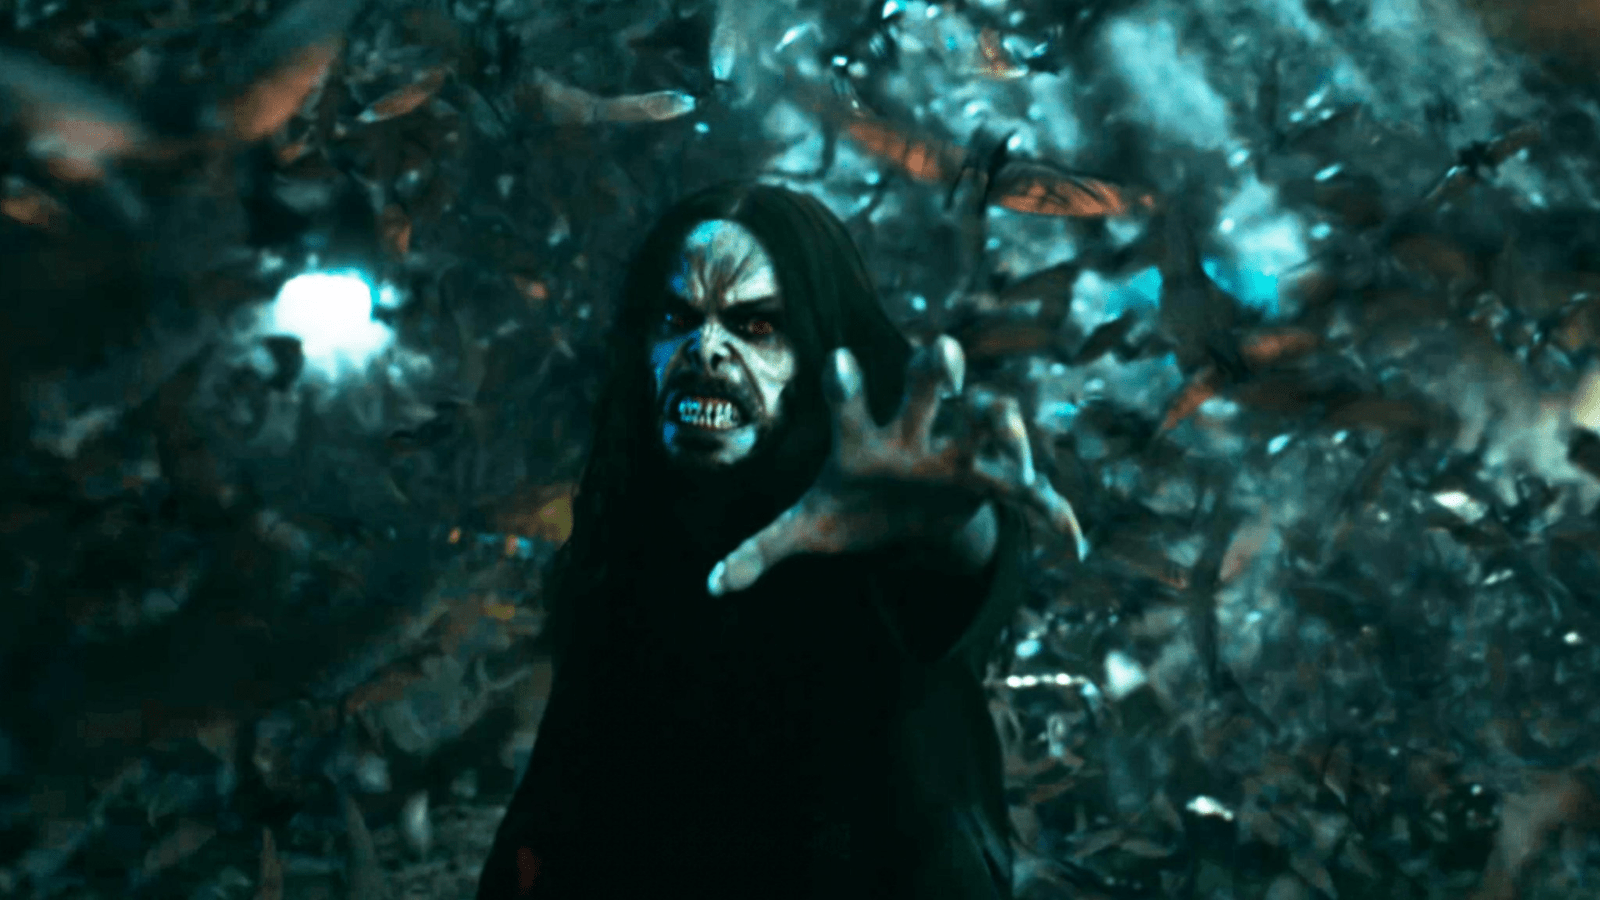 [รีวิว] Morbius – ฮีโรวายร้าย แวมไพร์สู้ชีวิต